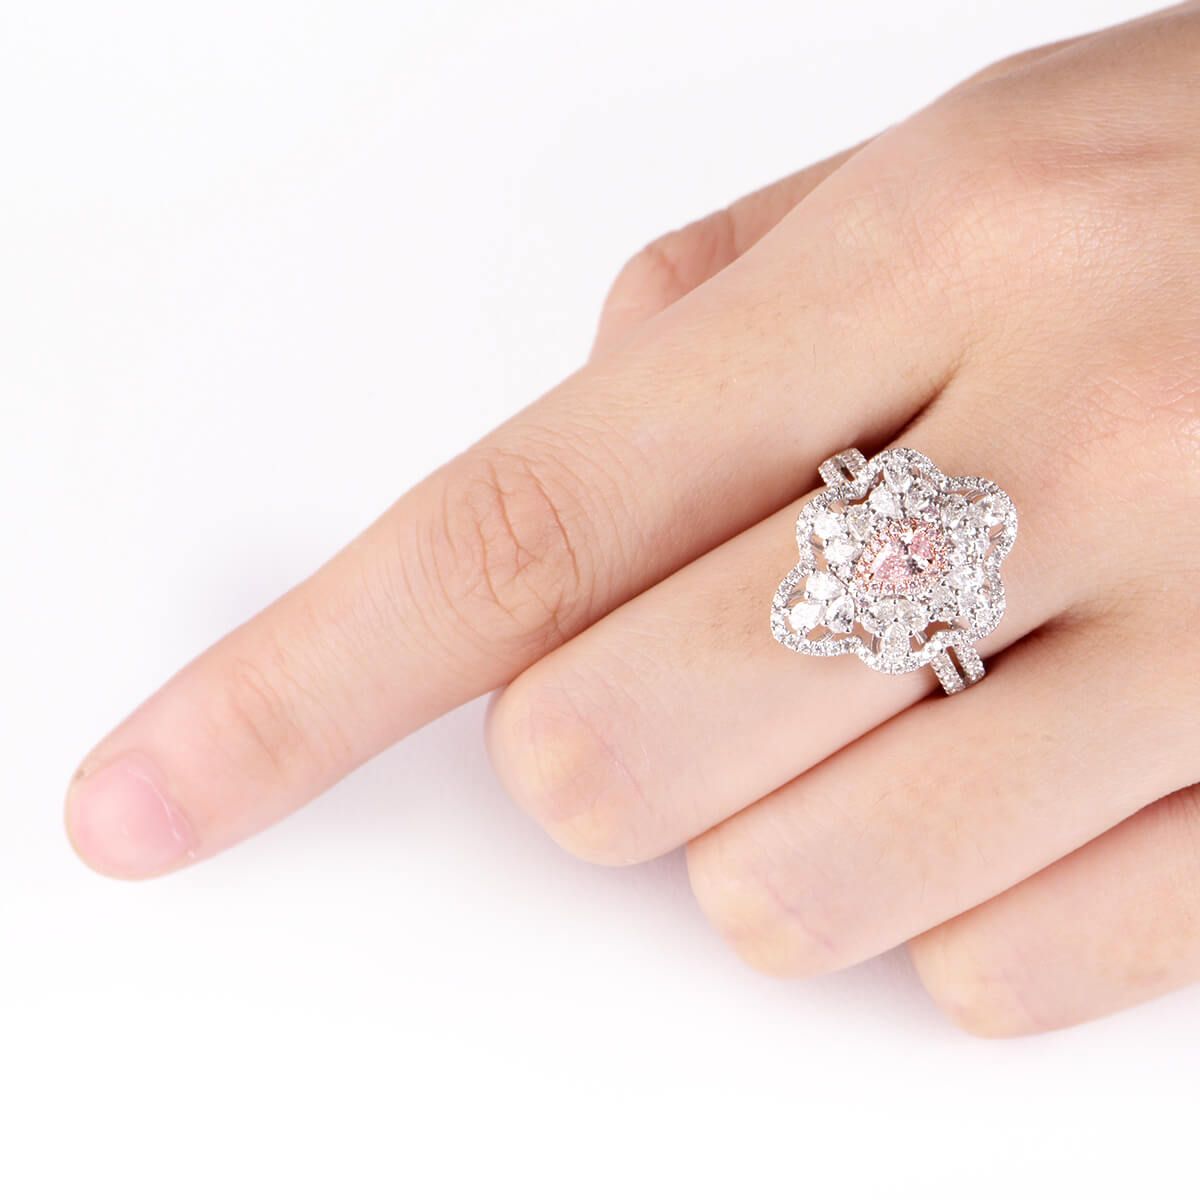 浅 粉色 钻石 戒指, 0.16 重量 (1.51 克拉 总重), 梨型 形状, GIA 认证, 5181017403